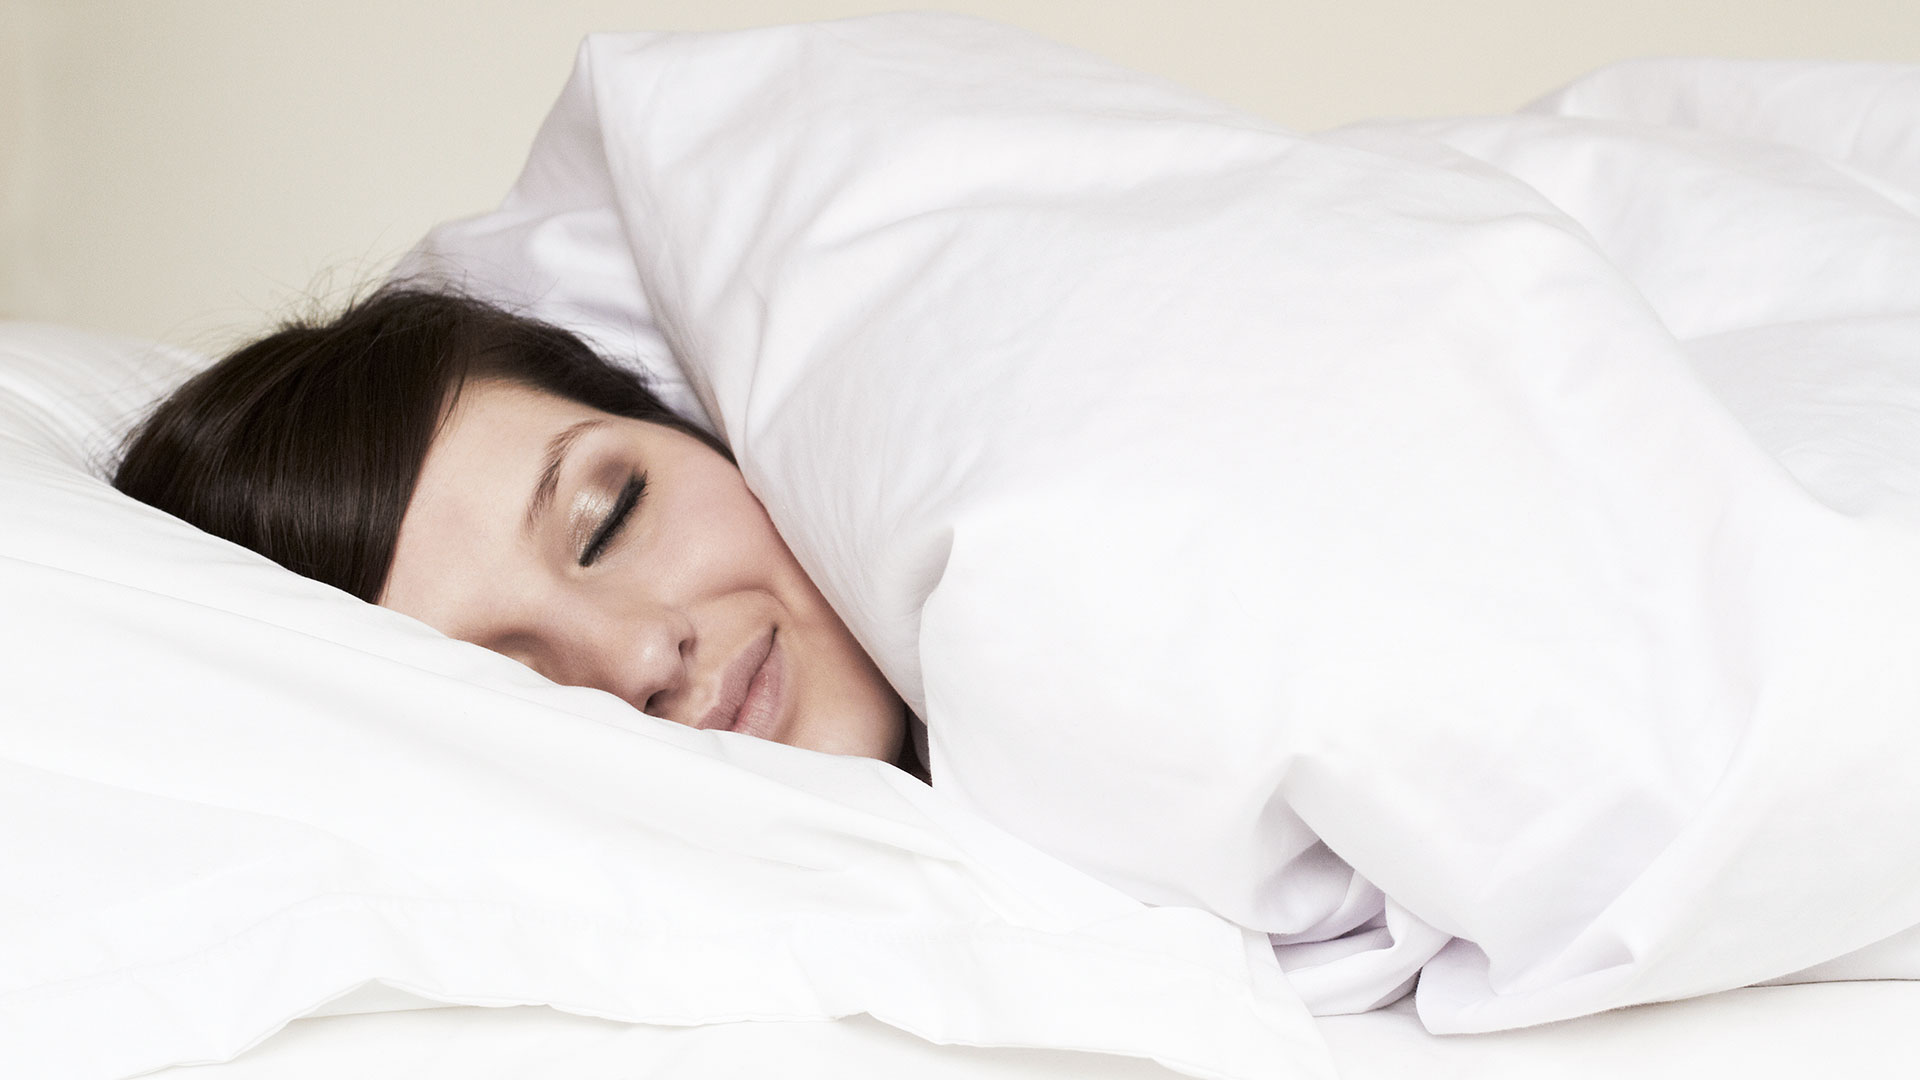 Nuevas evidencias científicas comprueban que dormir del lado derecho ayuda al cerebro a liberar mejor las toxinas (Gettyimages)